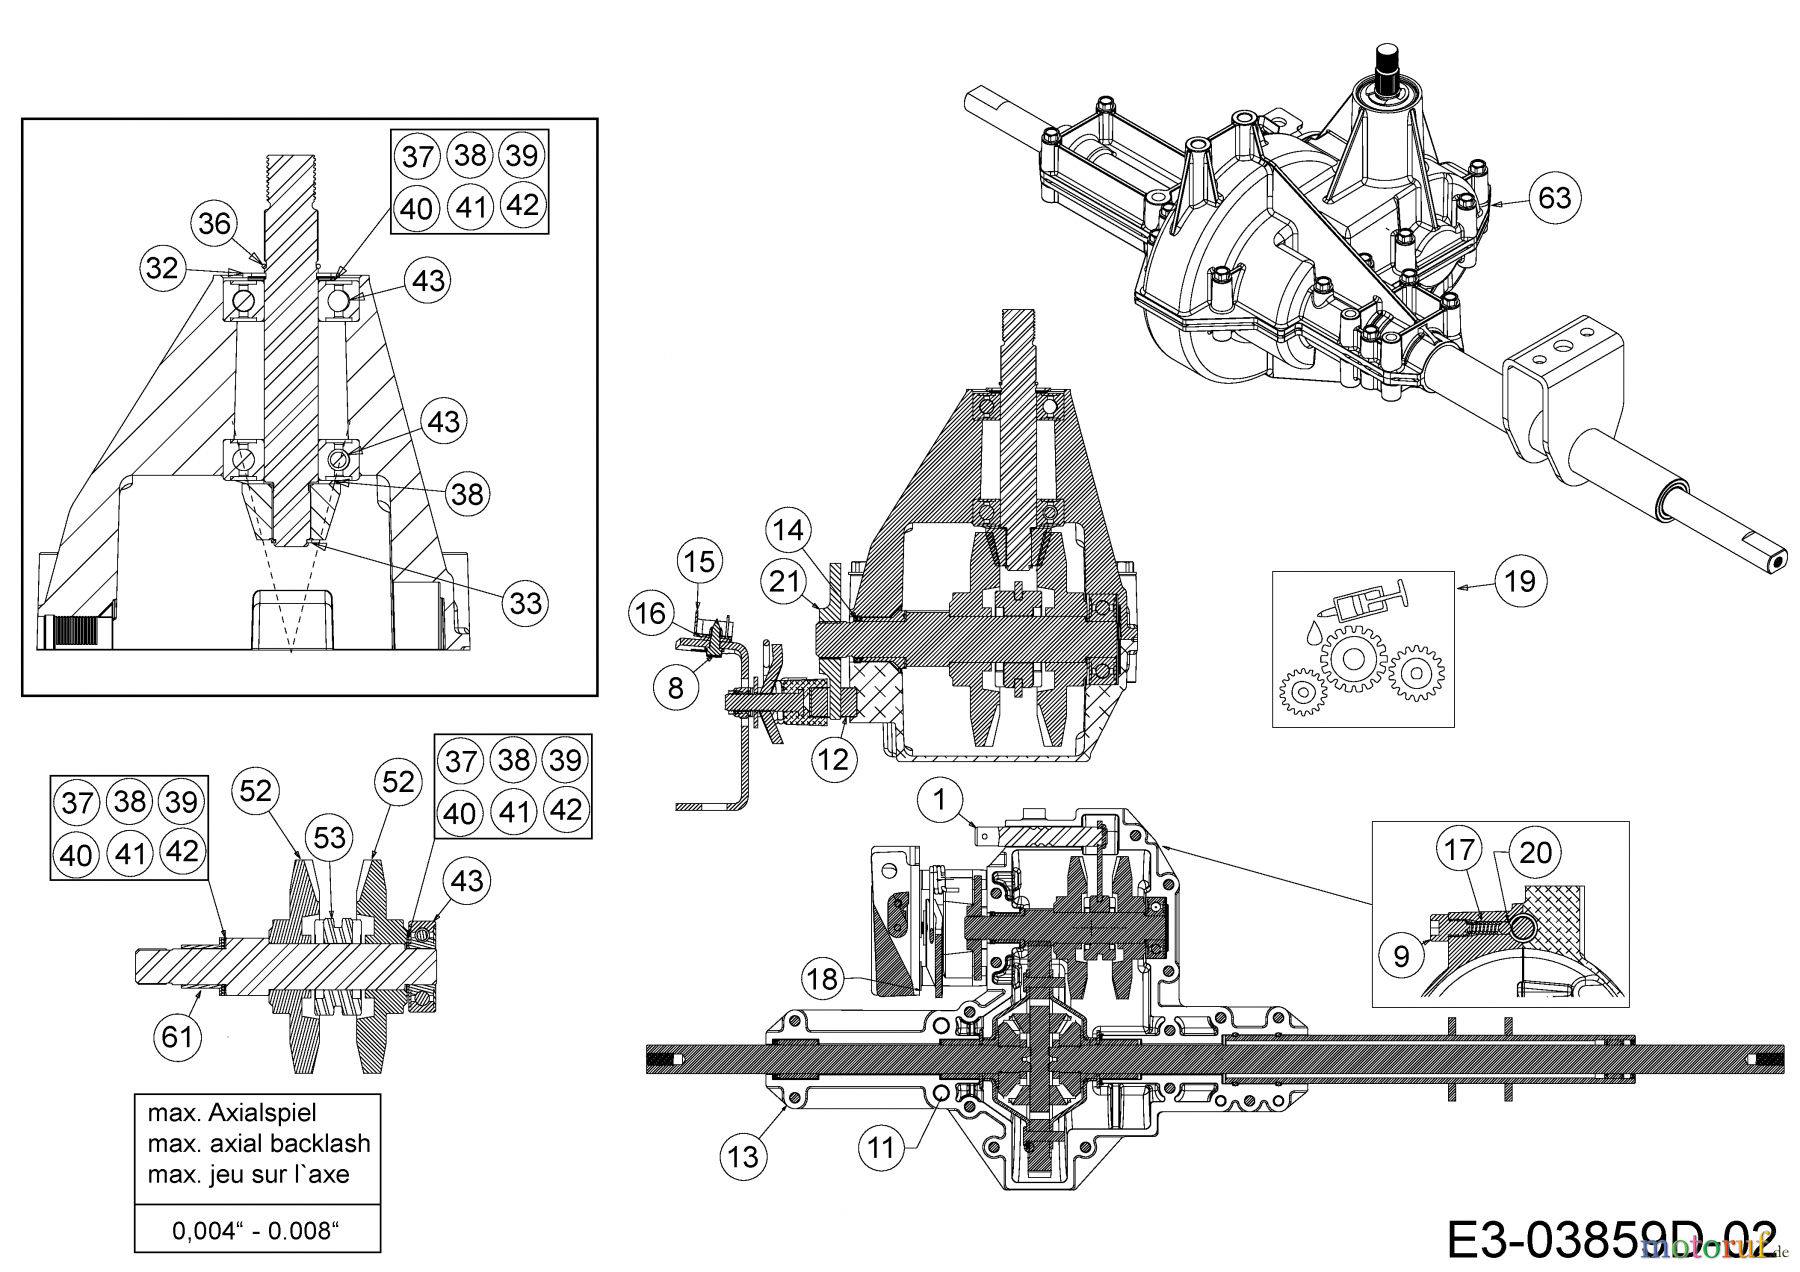  Qualcast Rasentraktoren LT 125-92 13HH765E639  (2014) Getriebe